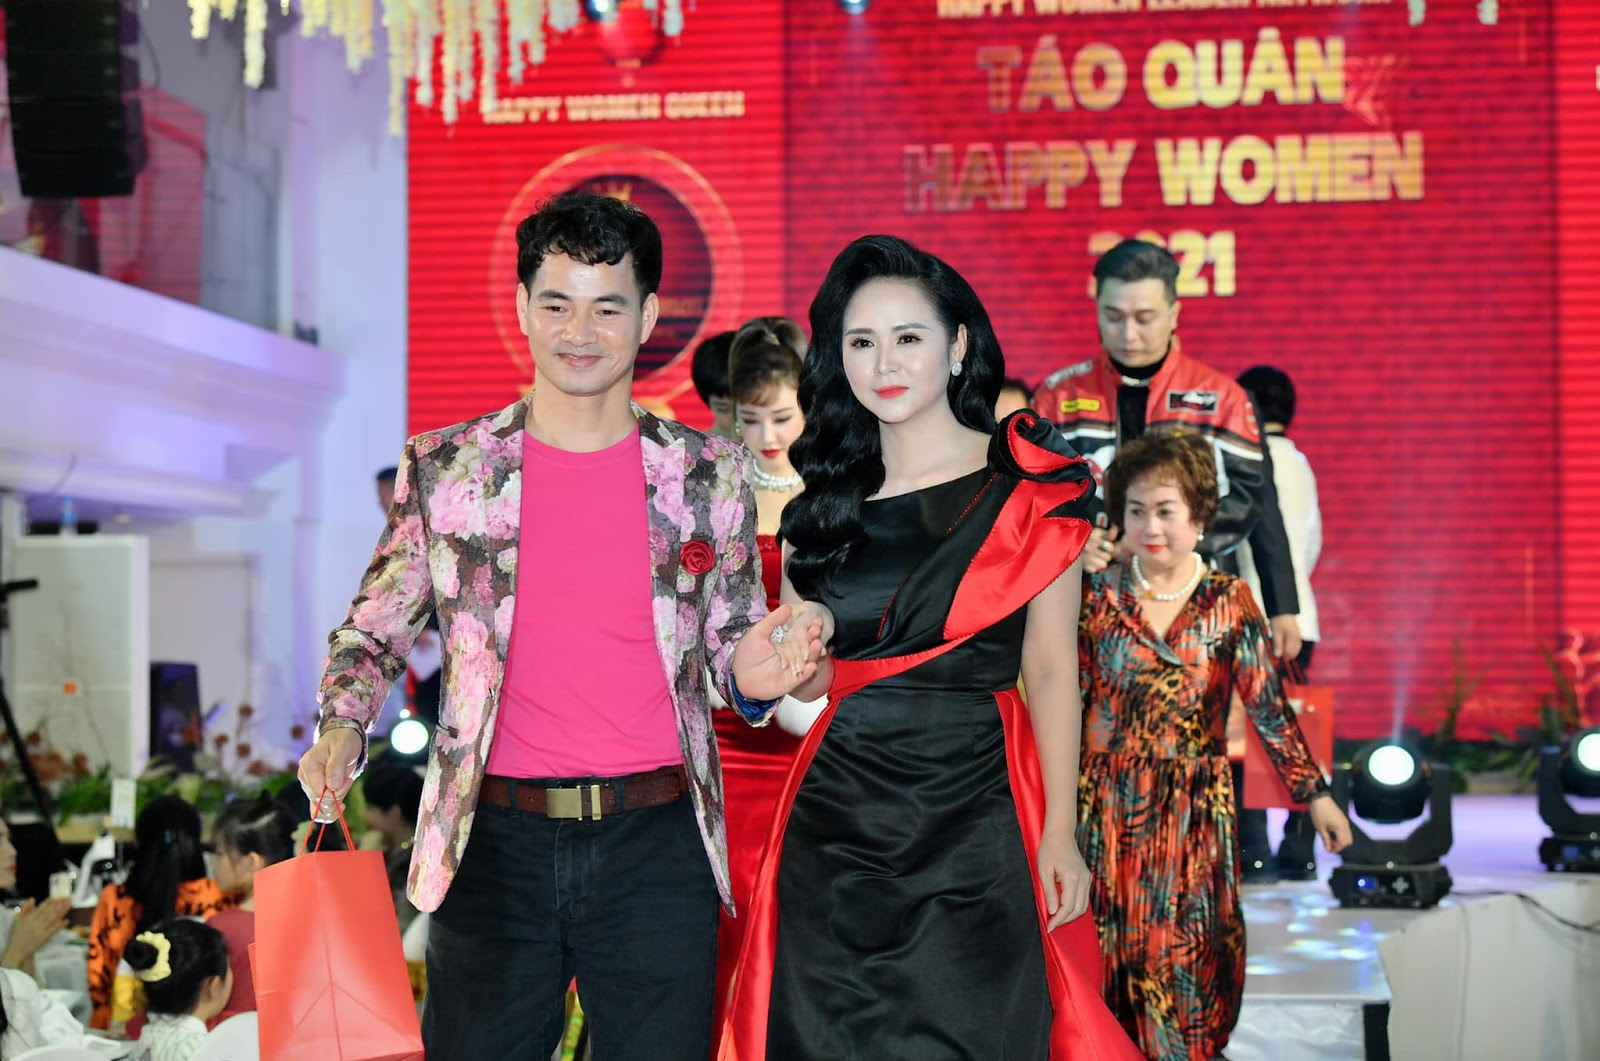 Chân dung Bùi Thanh Hương - Chủ tịch Happy Women - Trưởng ban tổ chức Táo quân 2021 - Ảnh 7.